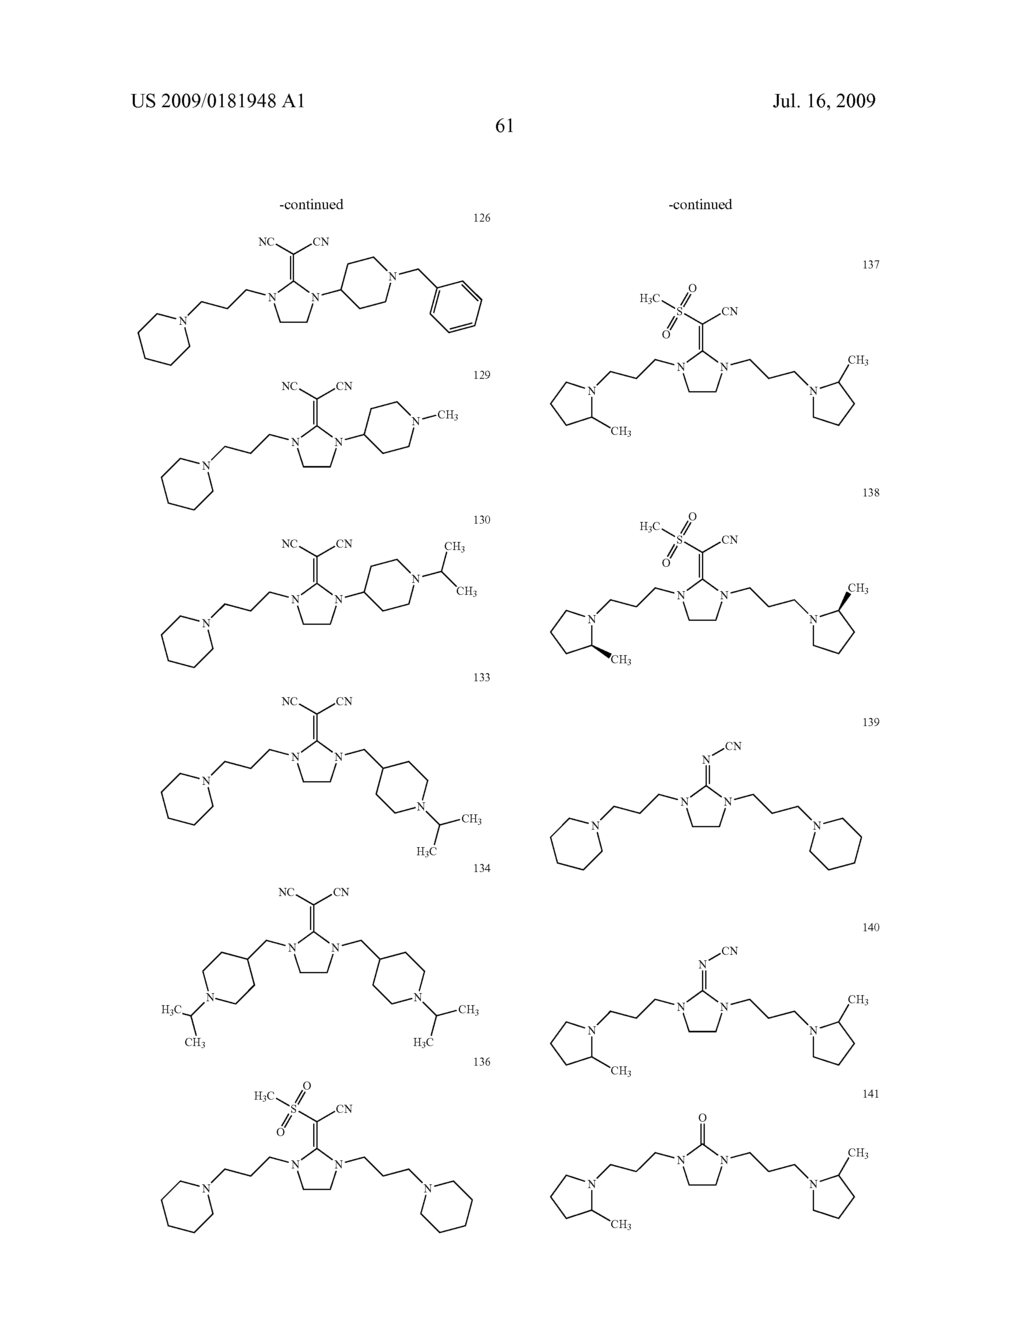 DIAMINE DERIVATIVE - diagram, schematic, and image 62